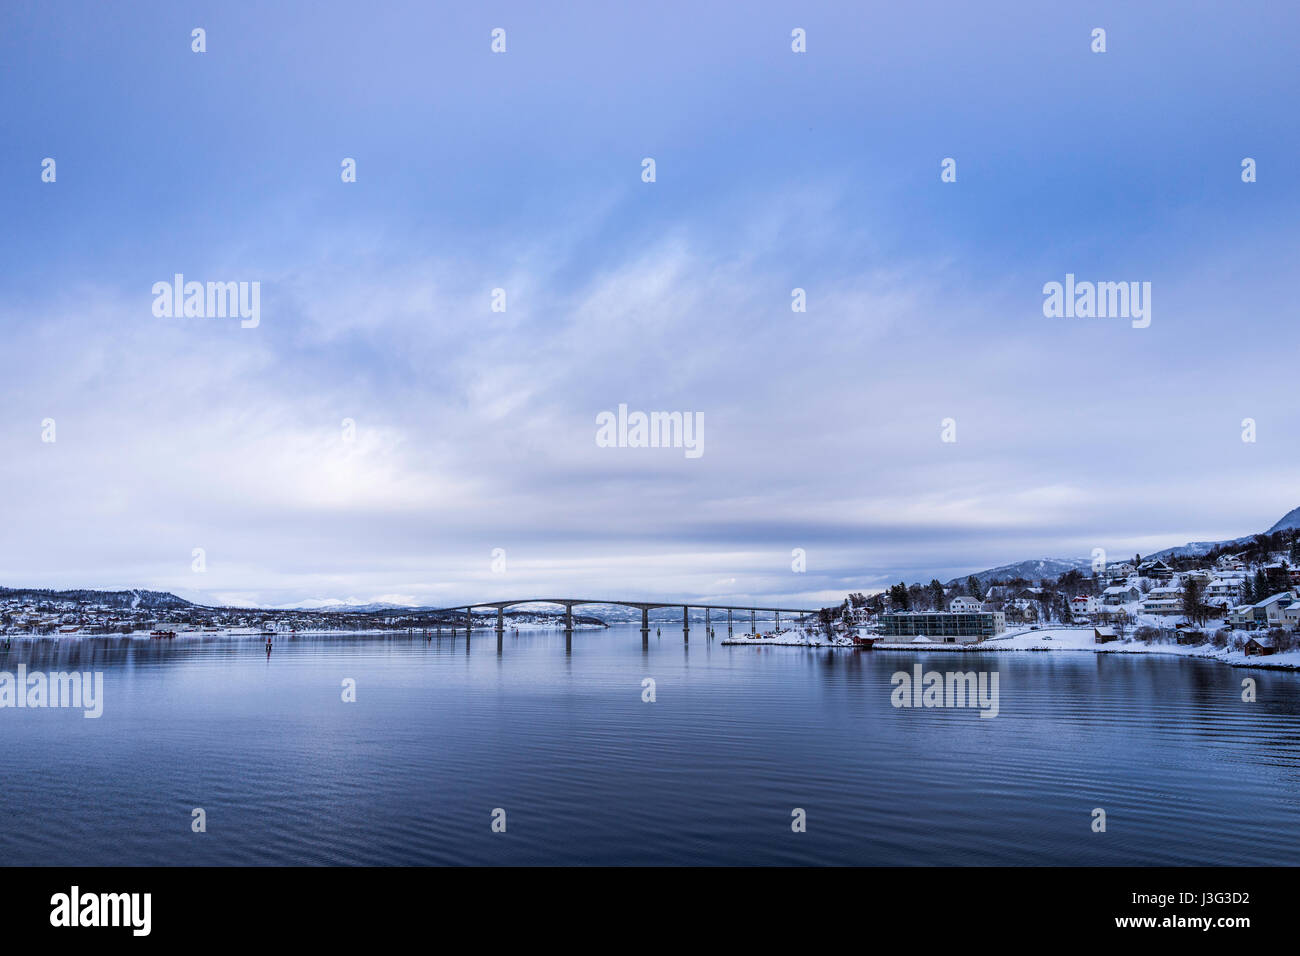 Gisund Bridge joins Senja Island to the Norwegian mainland at Finnsnes, Troms County, Norway. Stock Photo